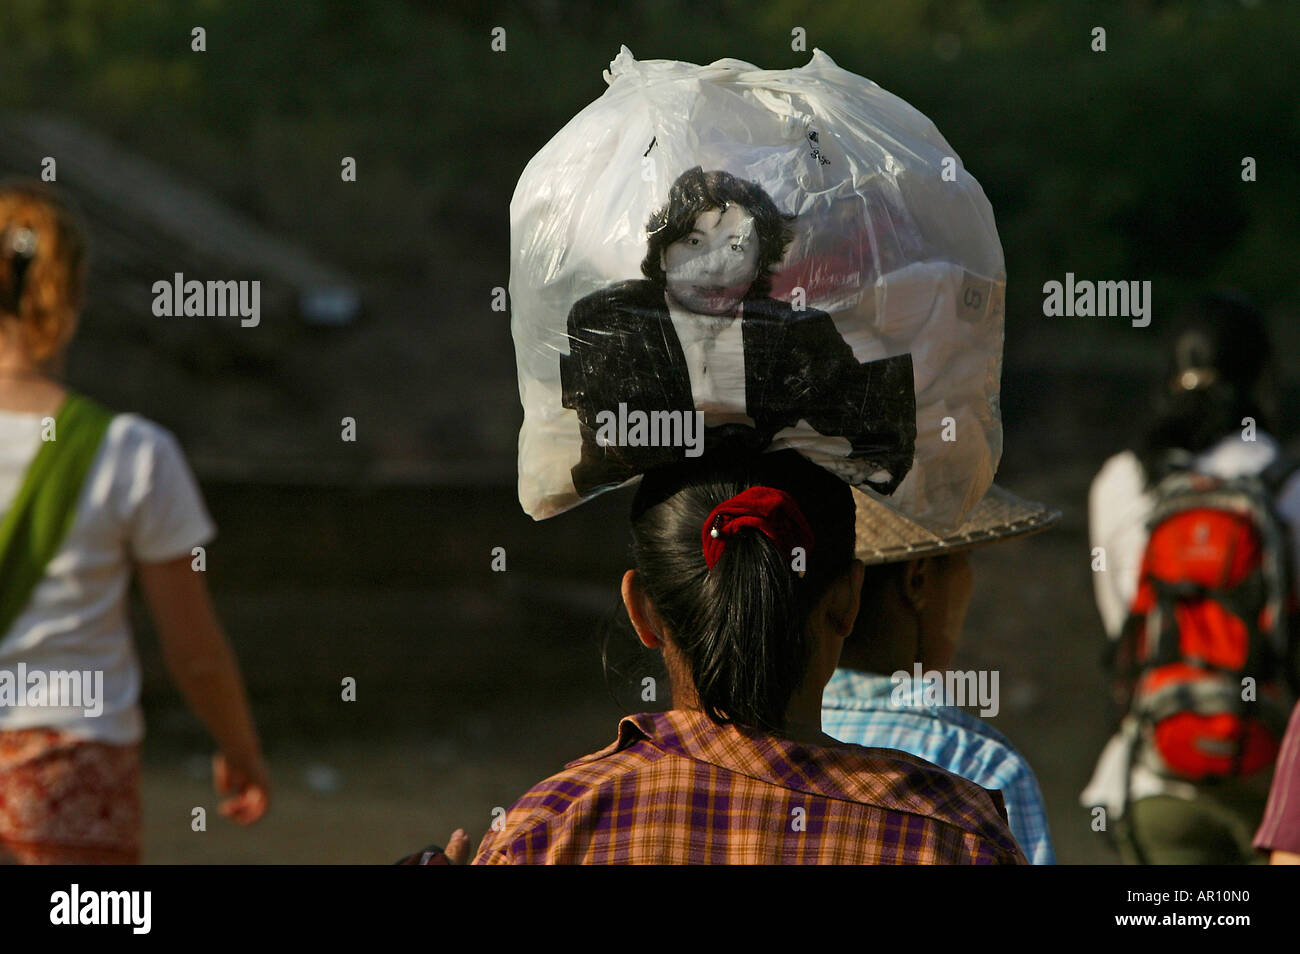 Le donne di bilanciamento del sacchetto di plastica sulla testa, Frau balanciert eine volle Plastikbeutel auf dem Kopf Foto Stock